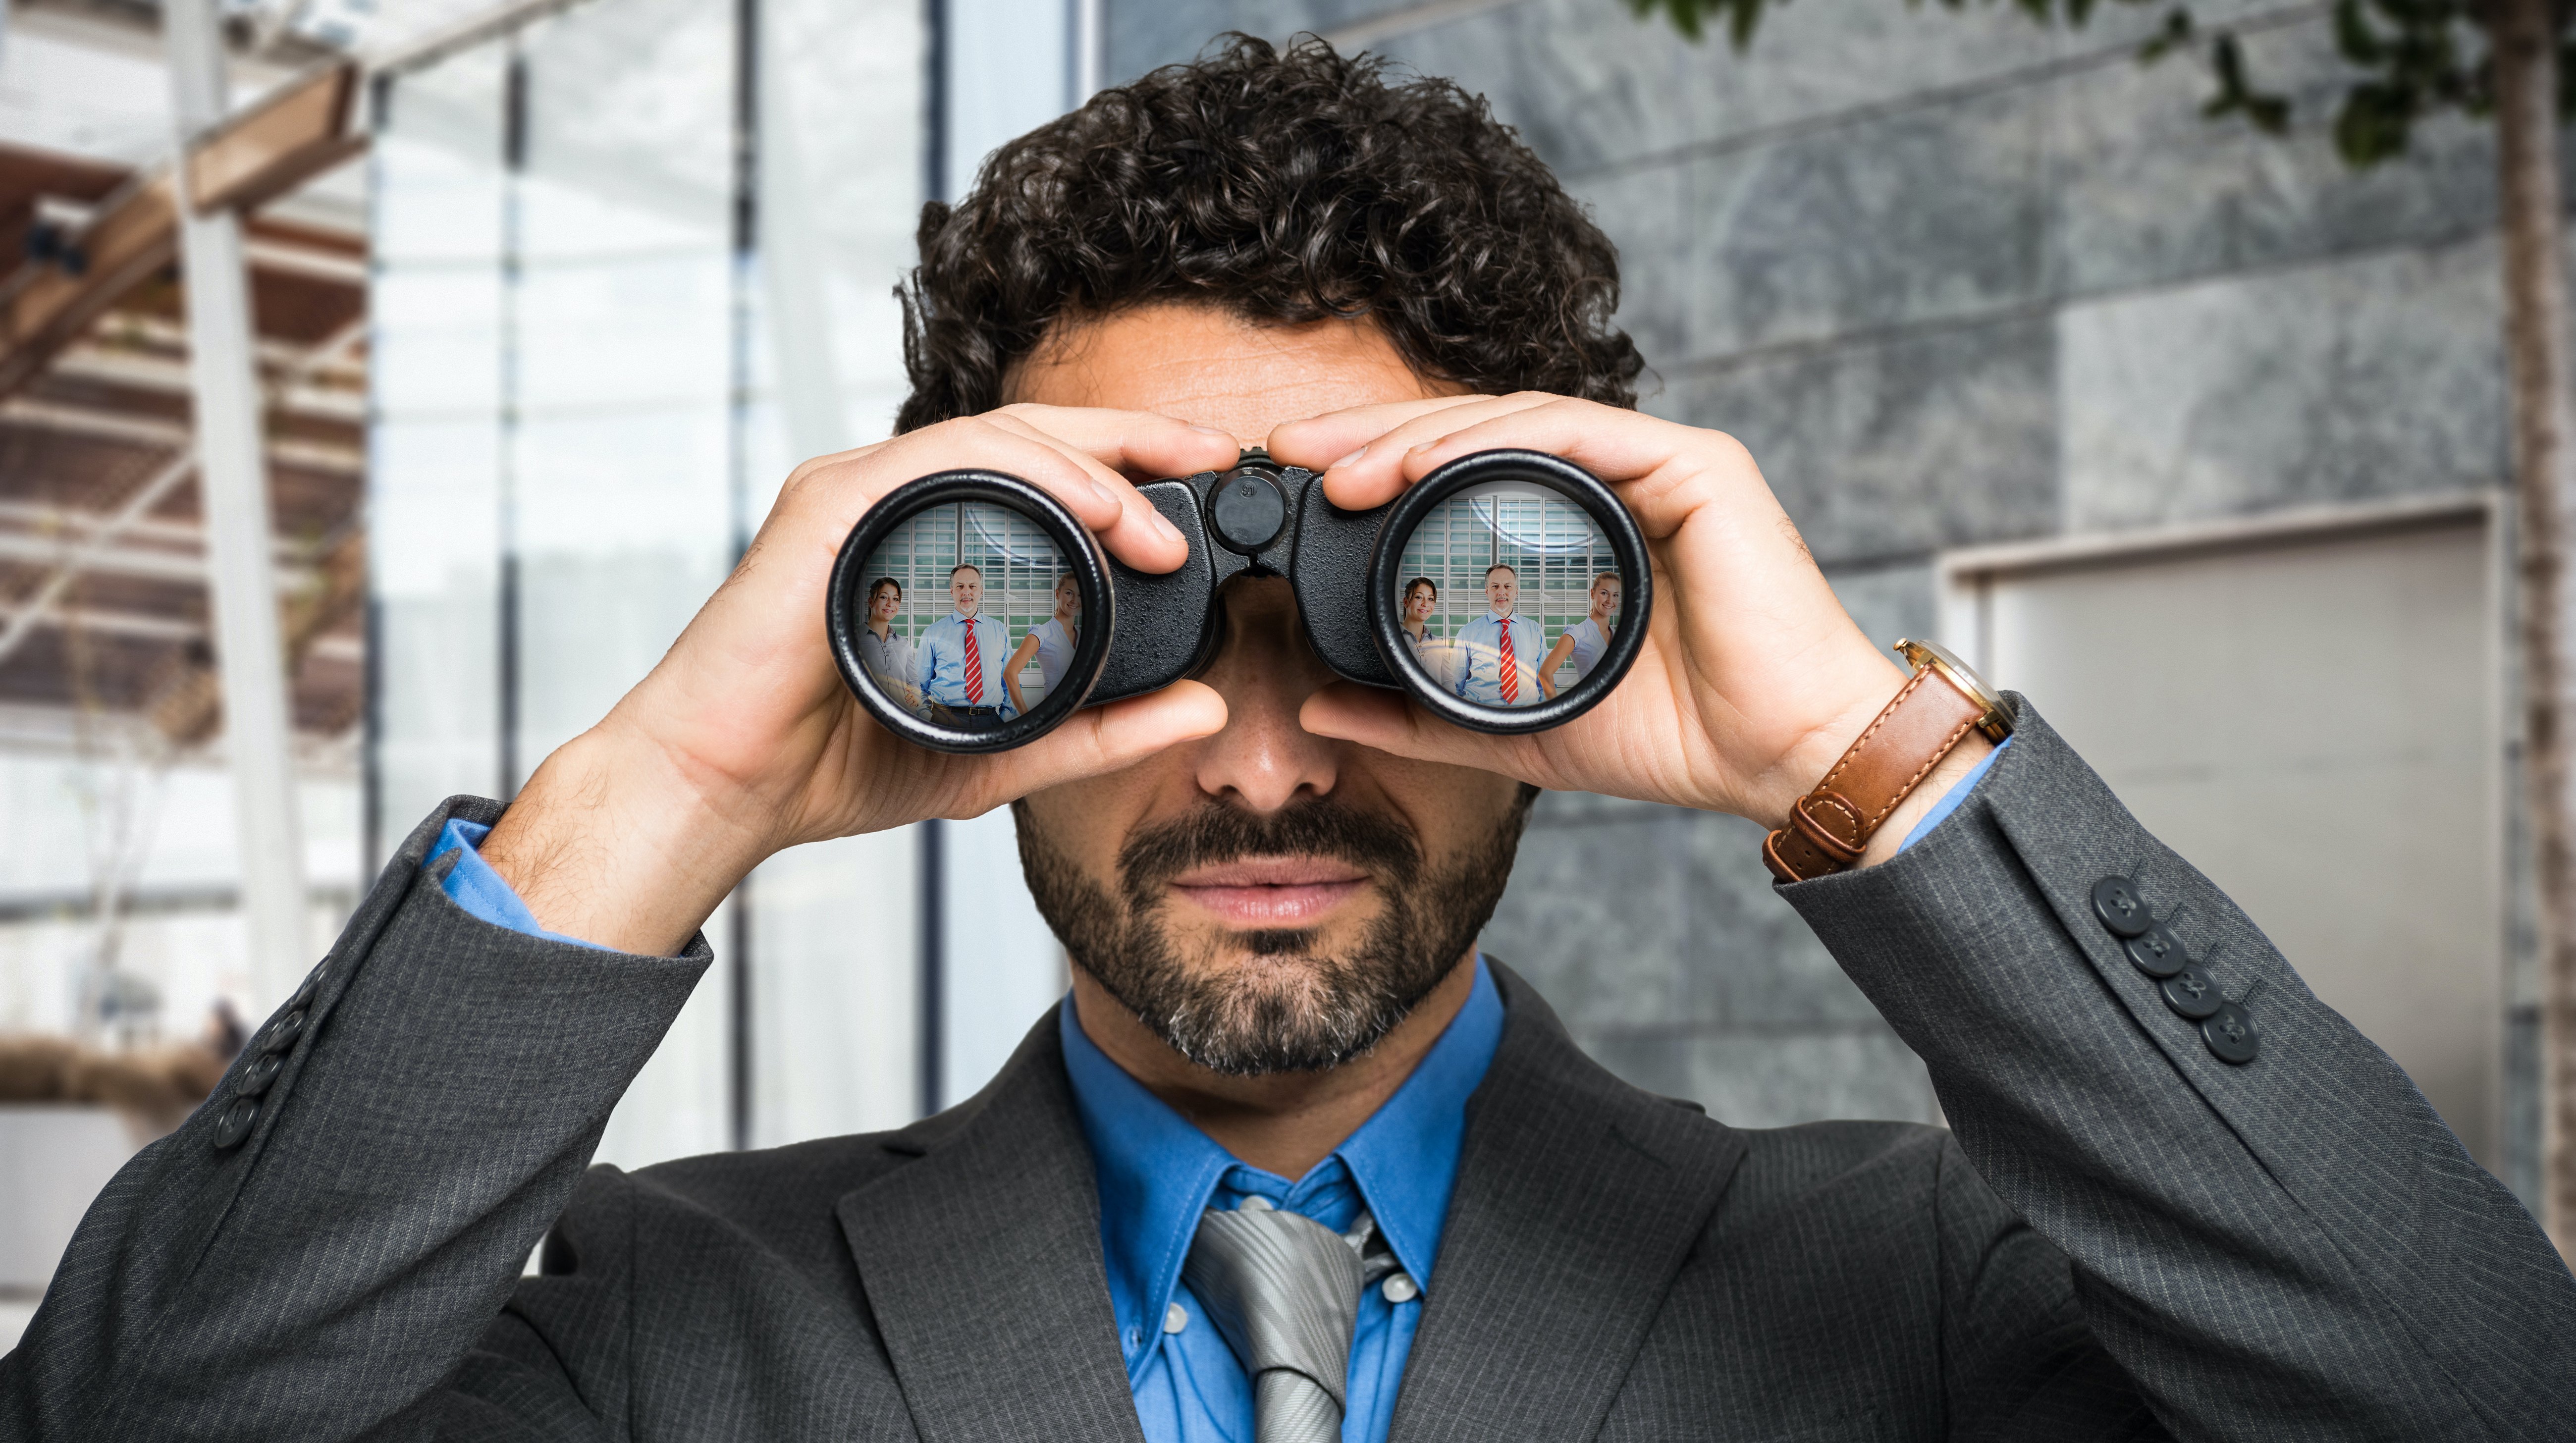 Customer search with binoculars